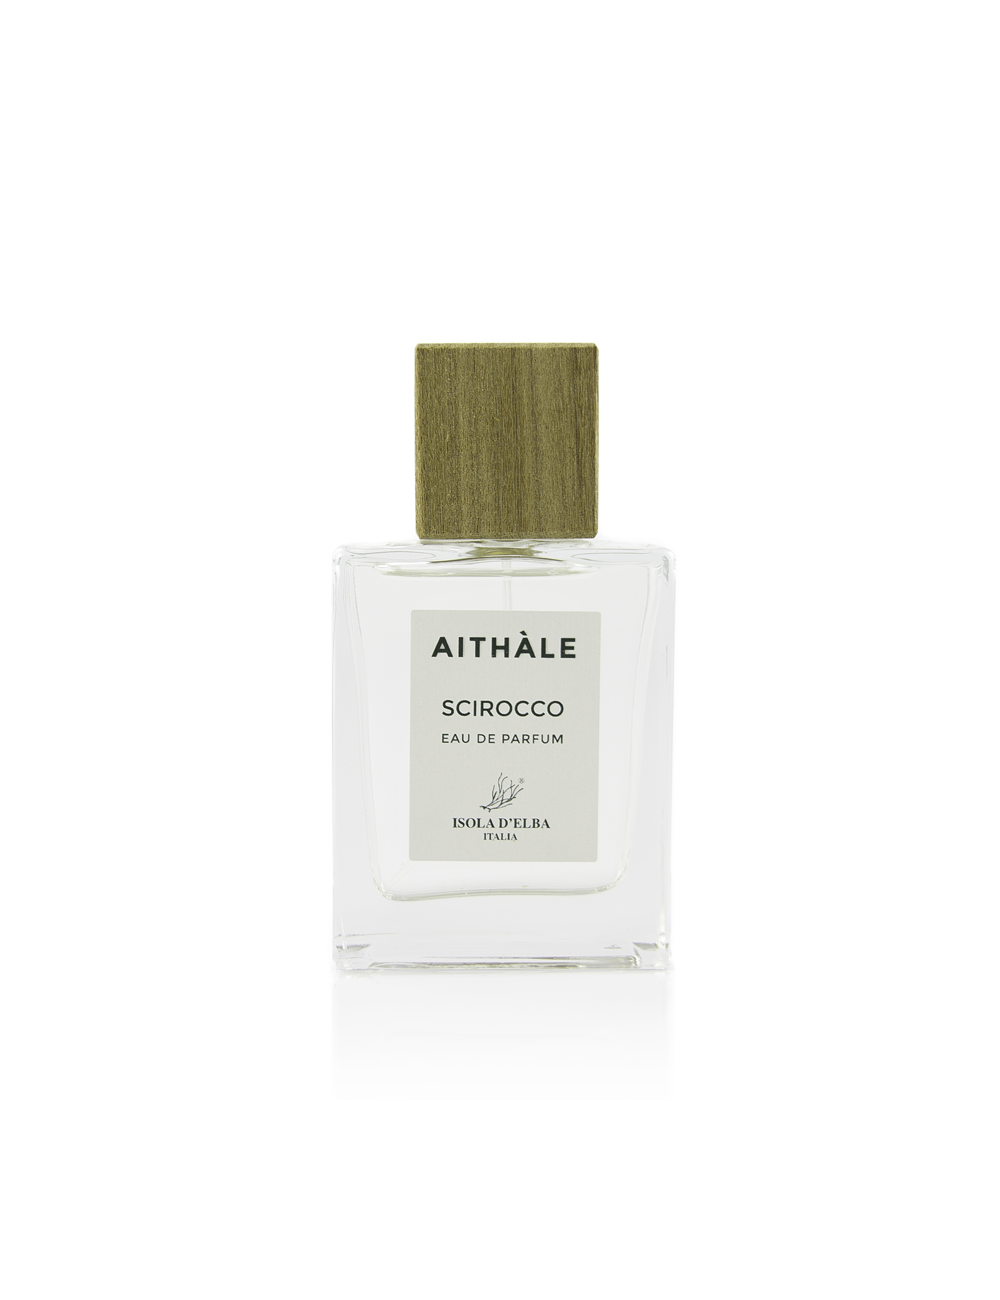 AITHÀLE - Scirocco 50ml Eau de parfum